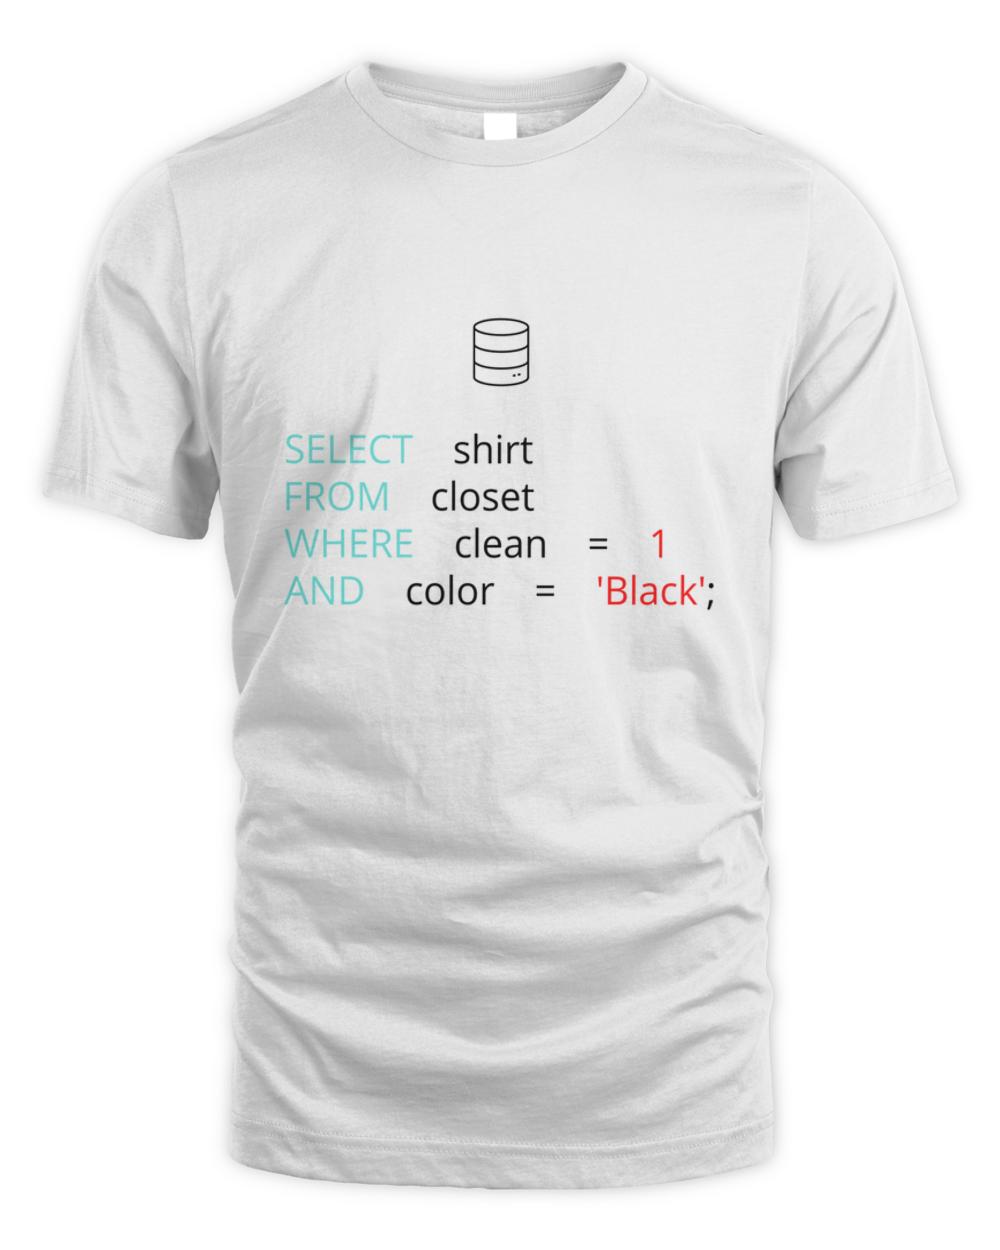 Premium funny sql database programmer joke t-shirt